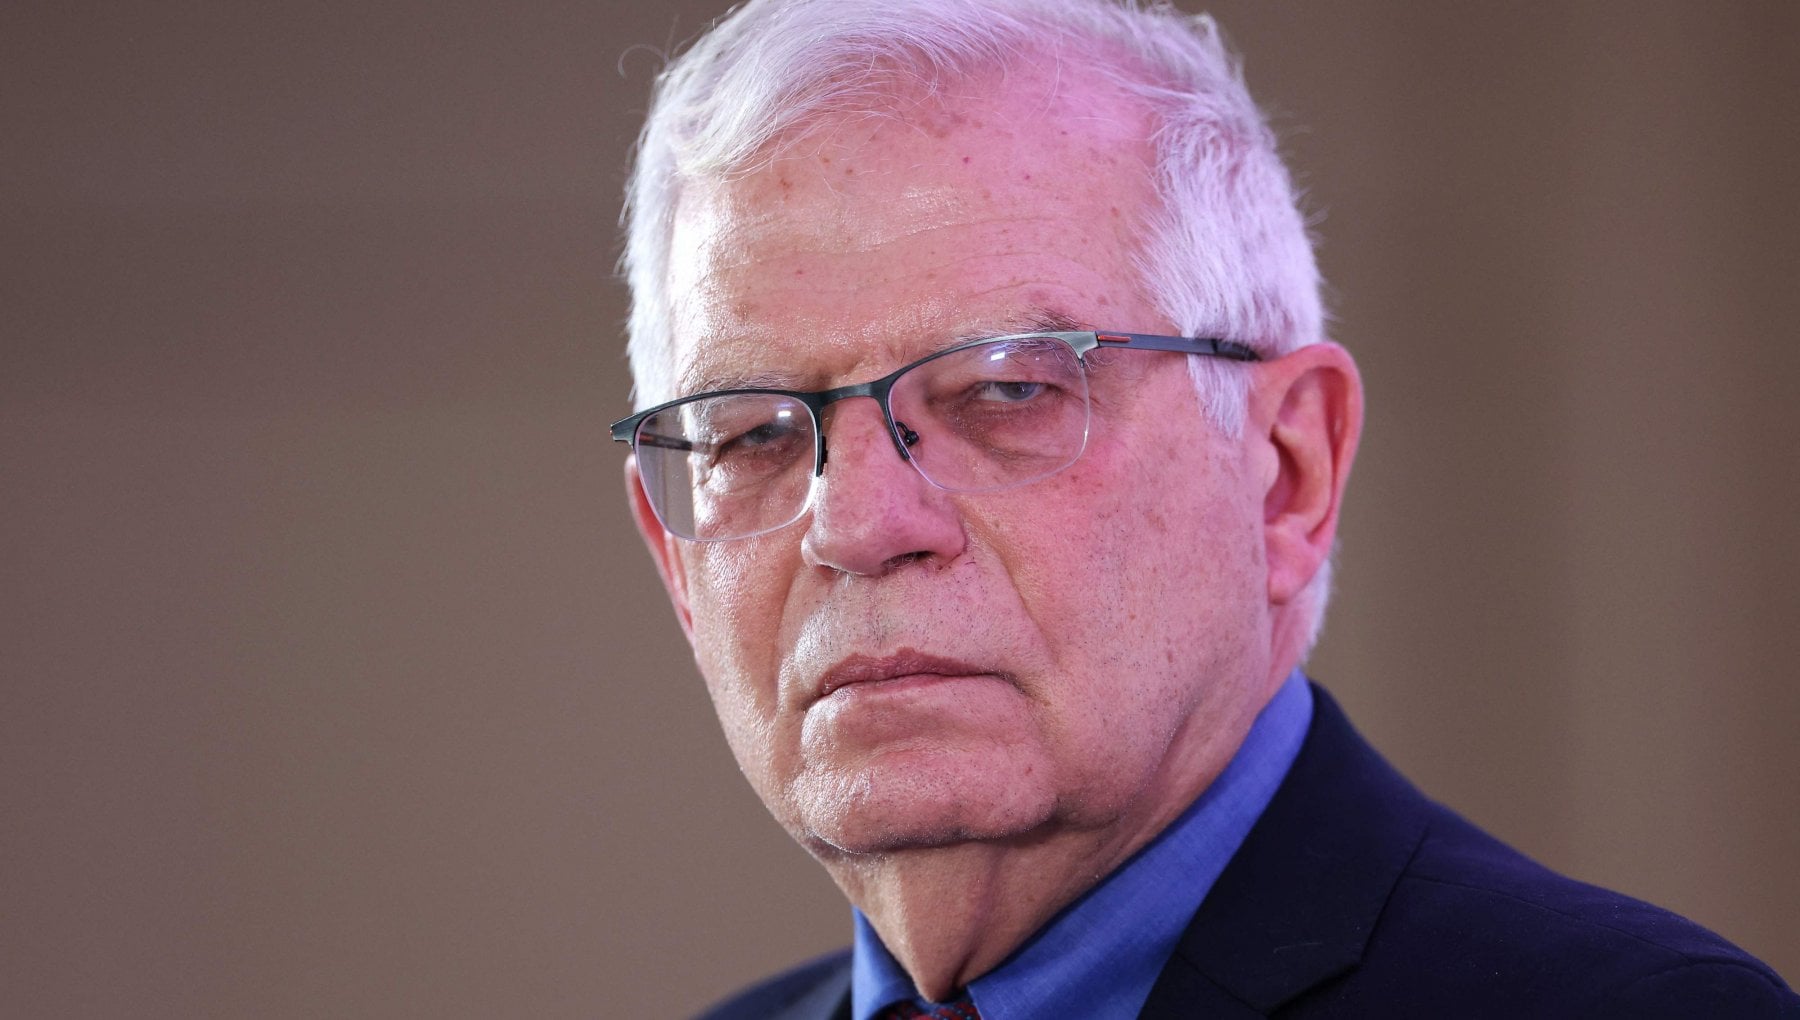 L'Alto rappresentante per la politica estera Borrell: "Putin non vuole la pace. La Ue continuerà a sostenere Kiev"